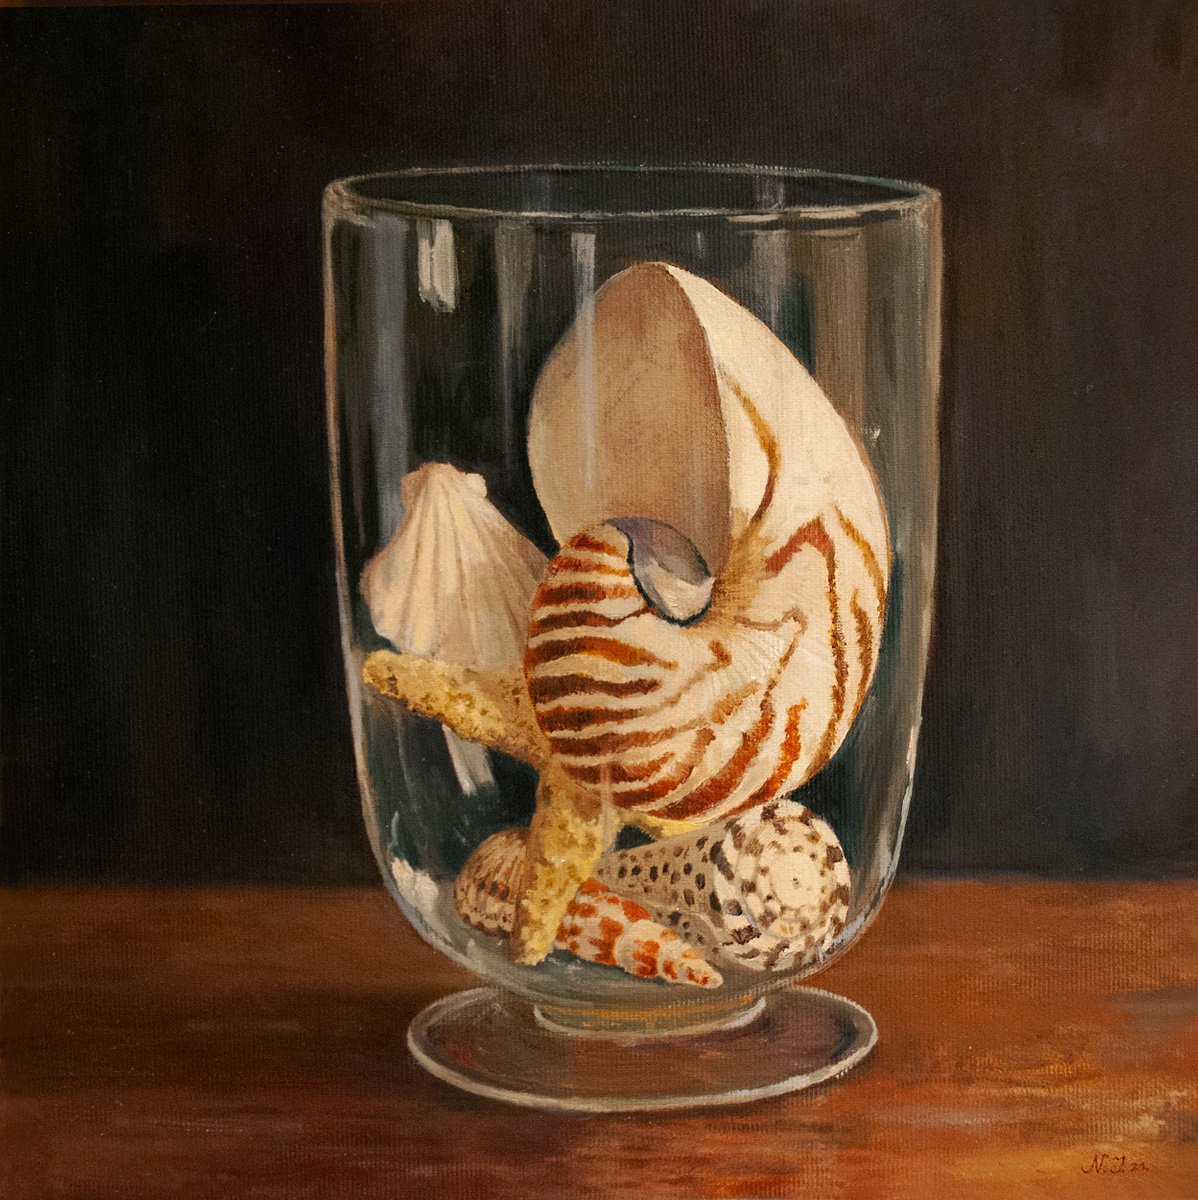 Seashells In a Glass Vase by Nikola Ivanovic